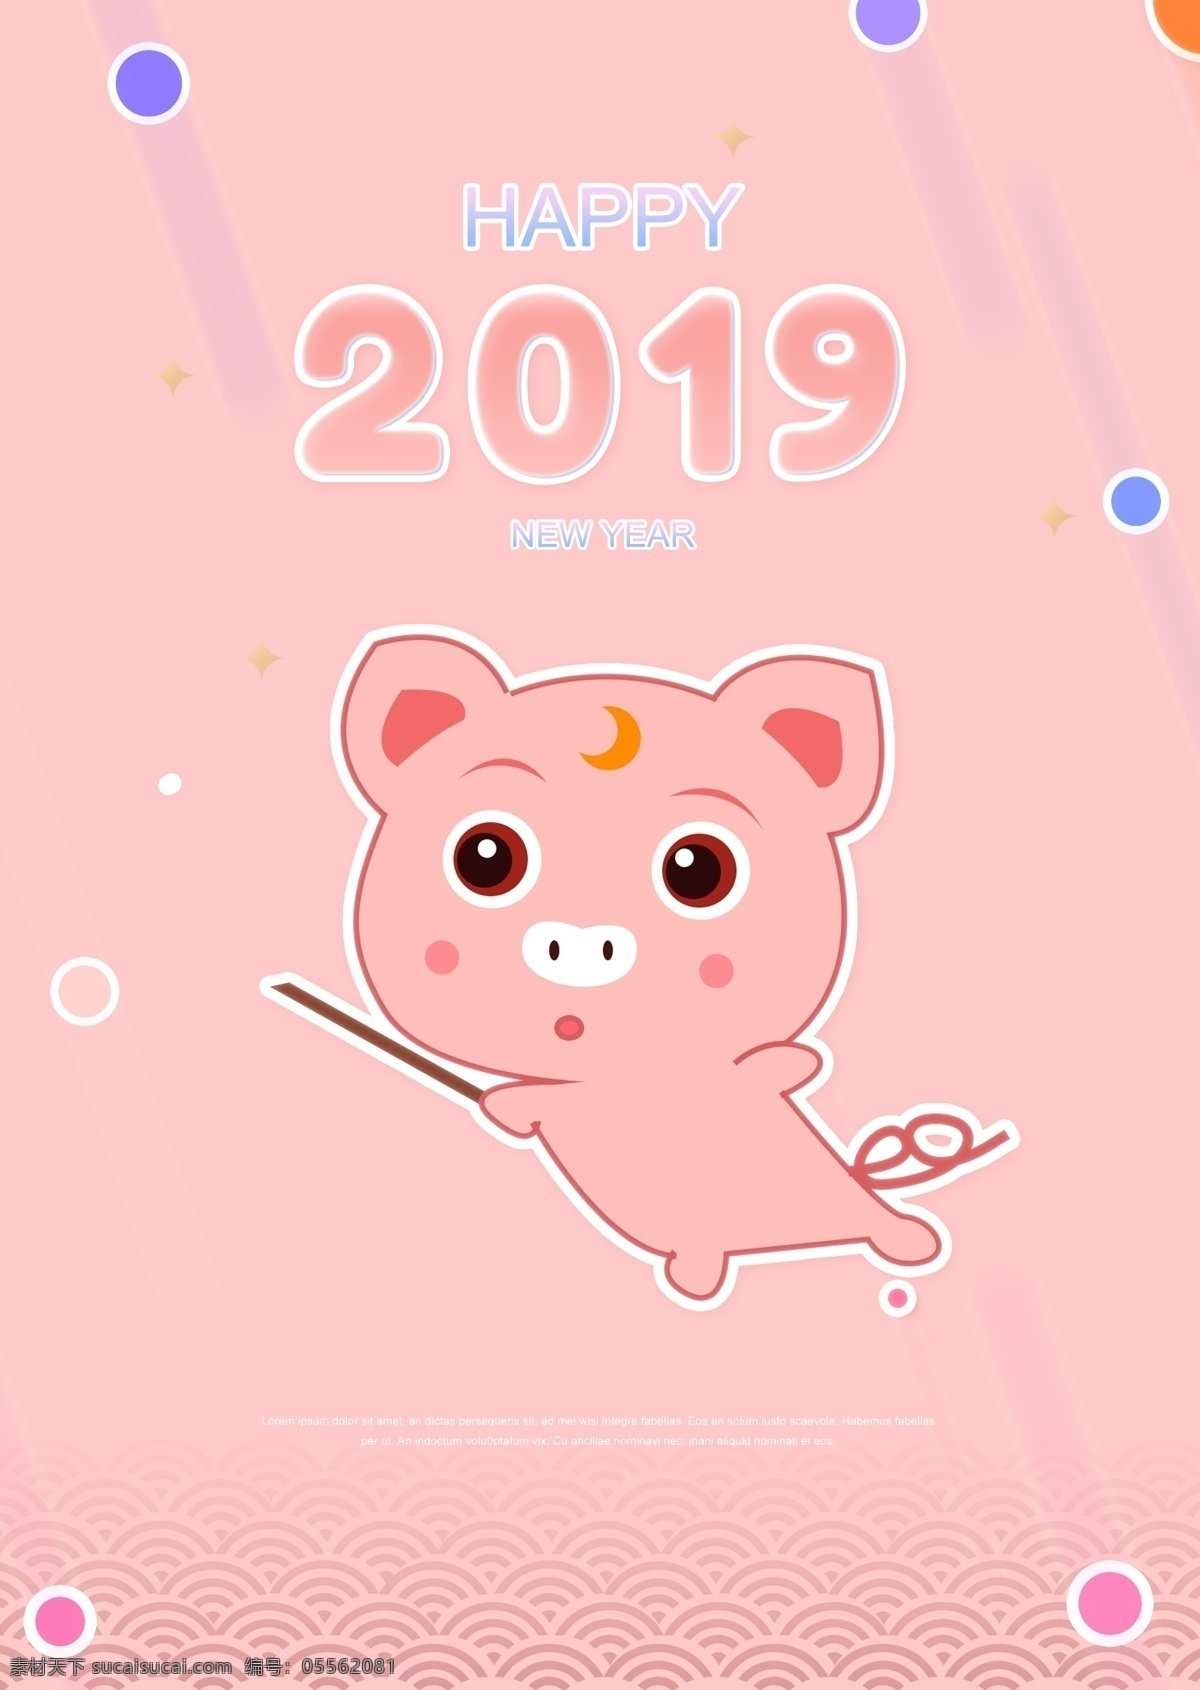 粉红色 的卡 通 2019 年金 猪 新 海报 数字 店 动画片 可爱 蓝色 紫色 粉 白色 金猪 中继